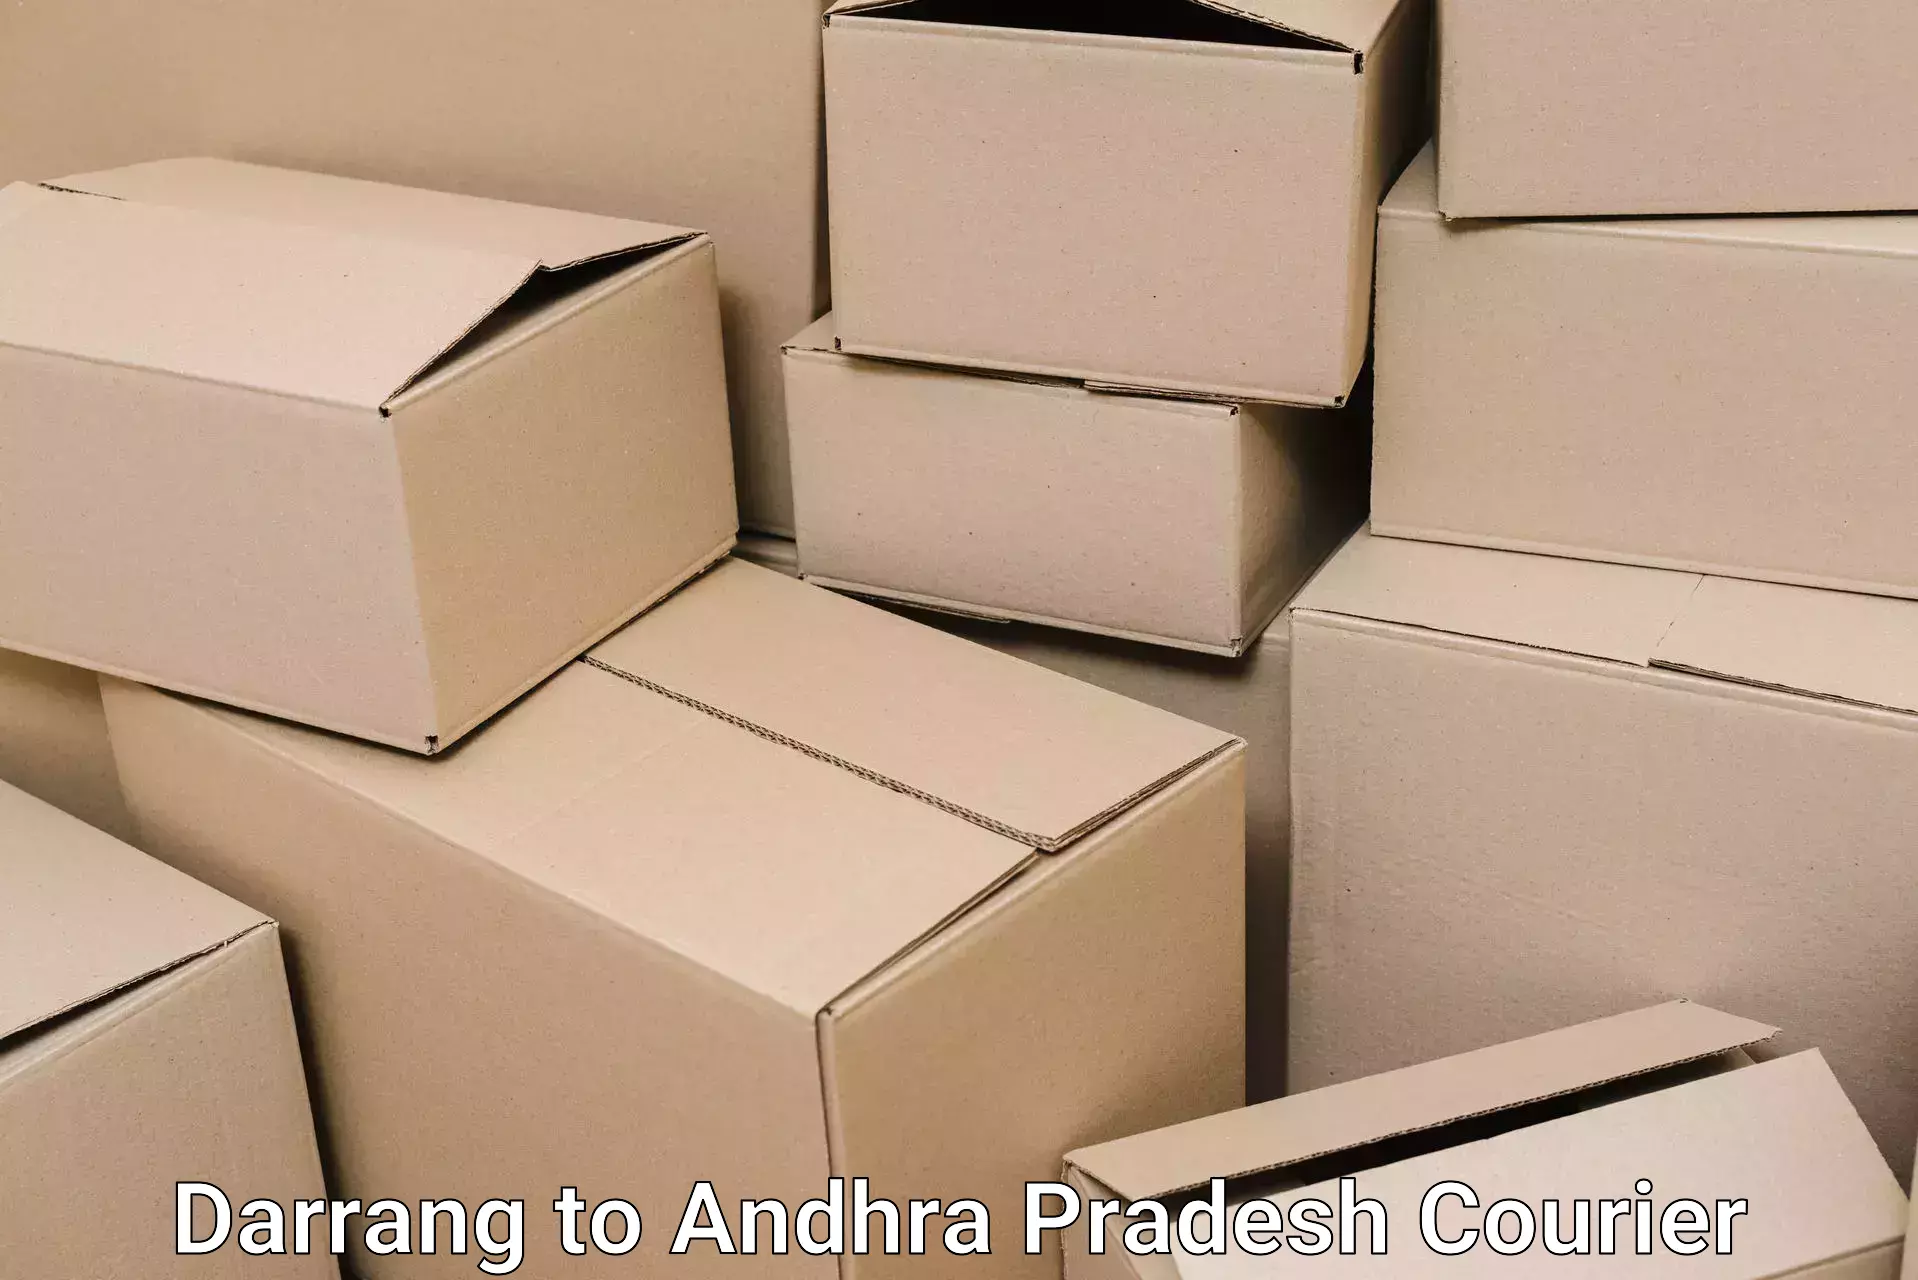 Efficient moving company Darrang to Hindupur